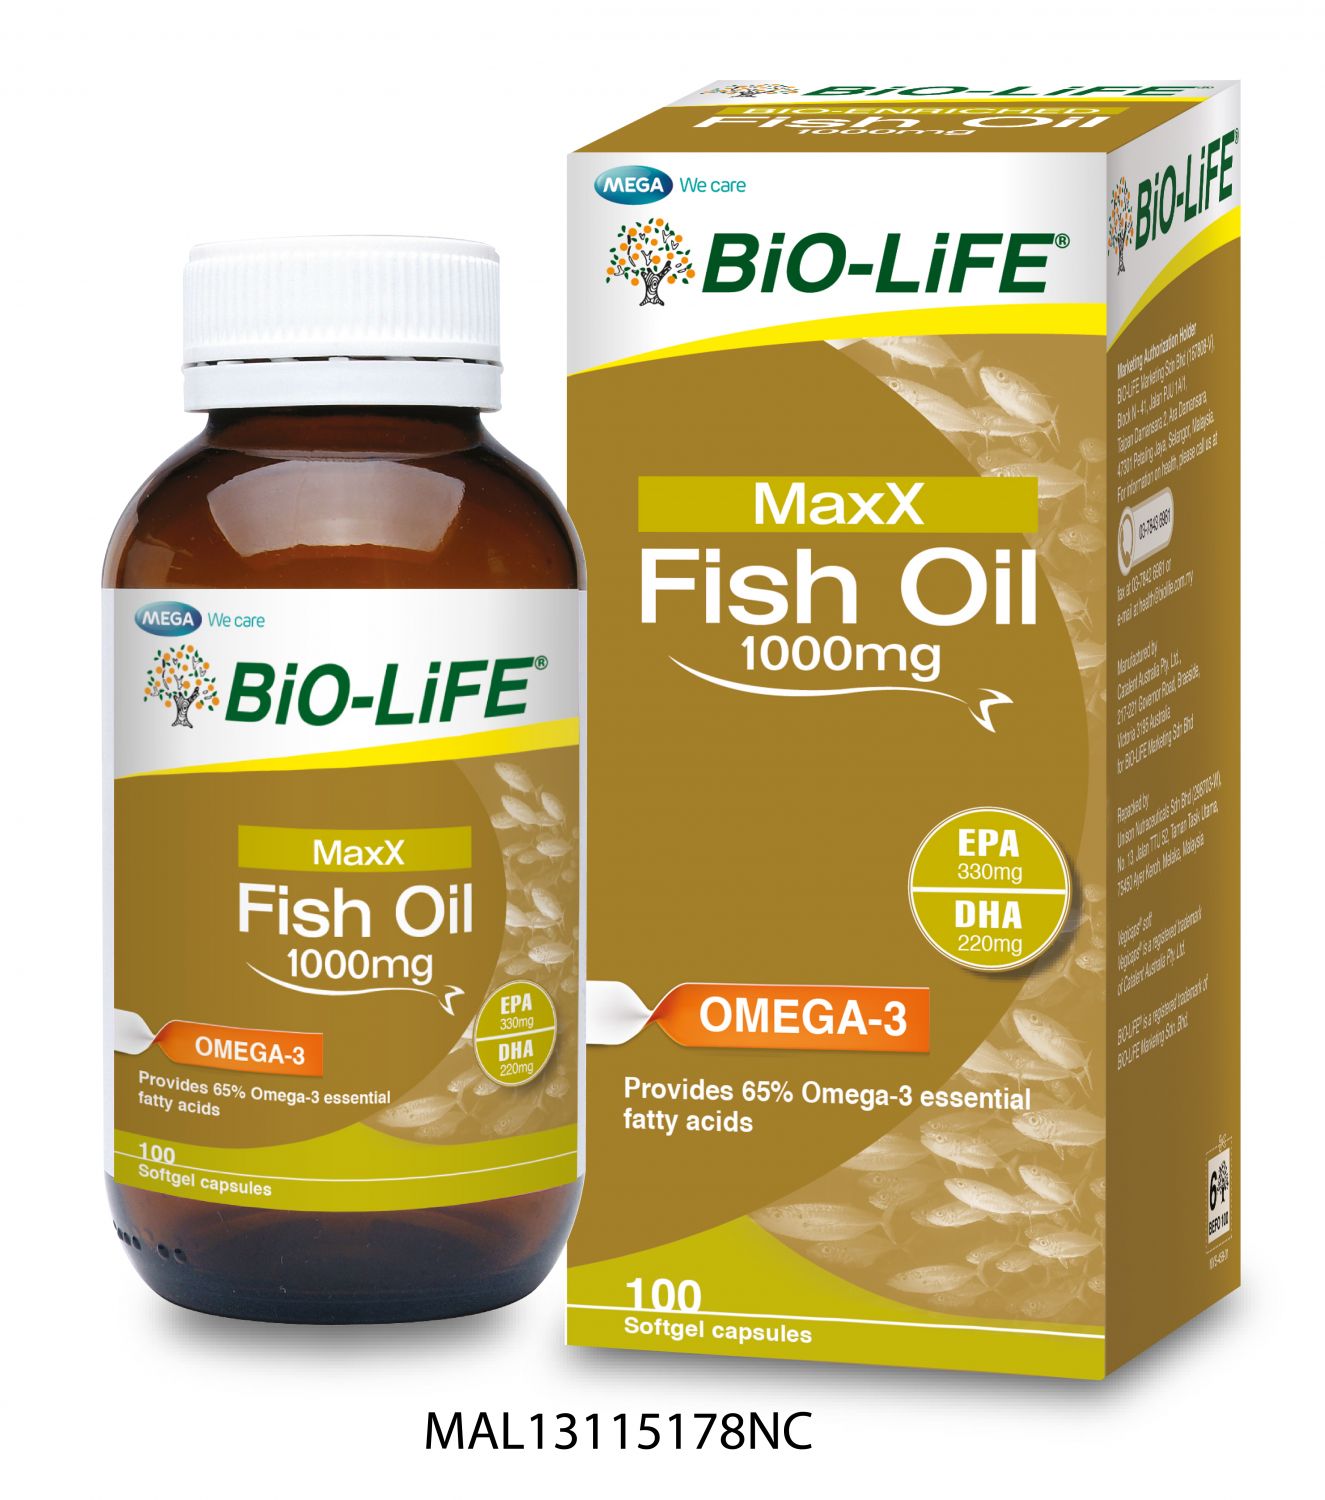 BiO-LiFE MaxX Fish Oil 1000mg reviews